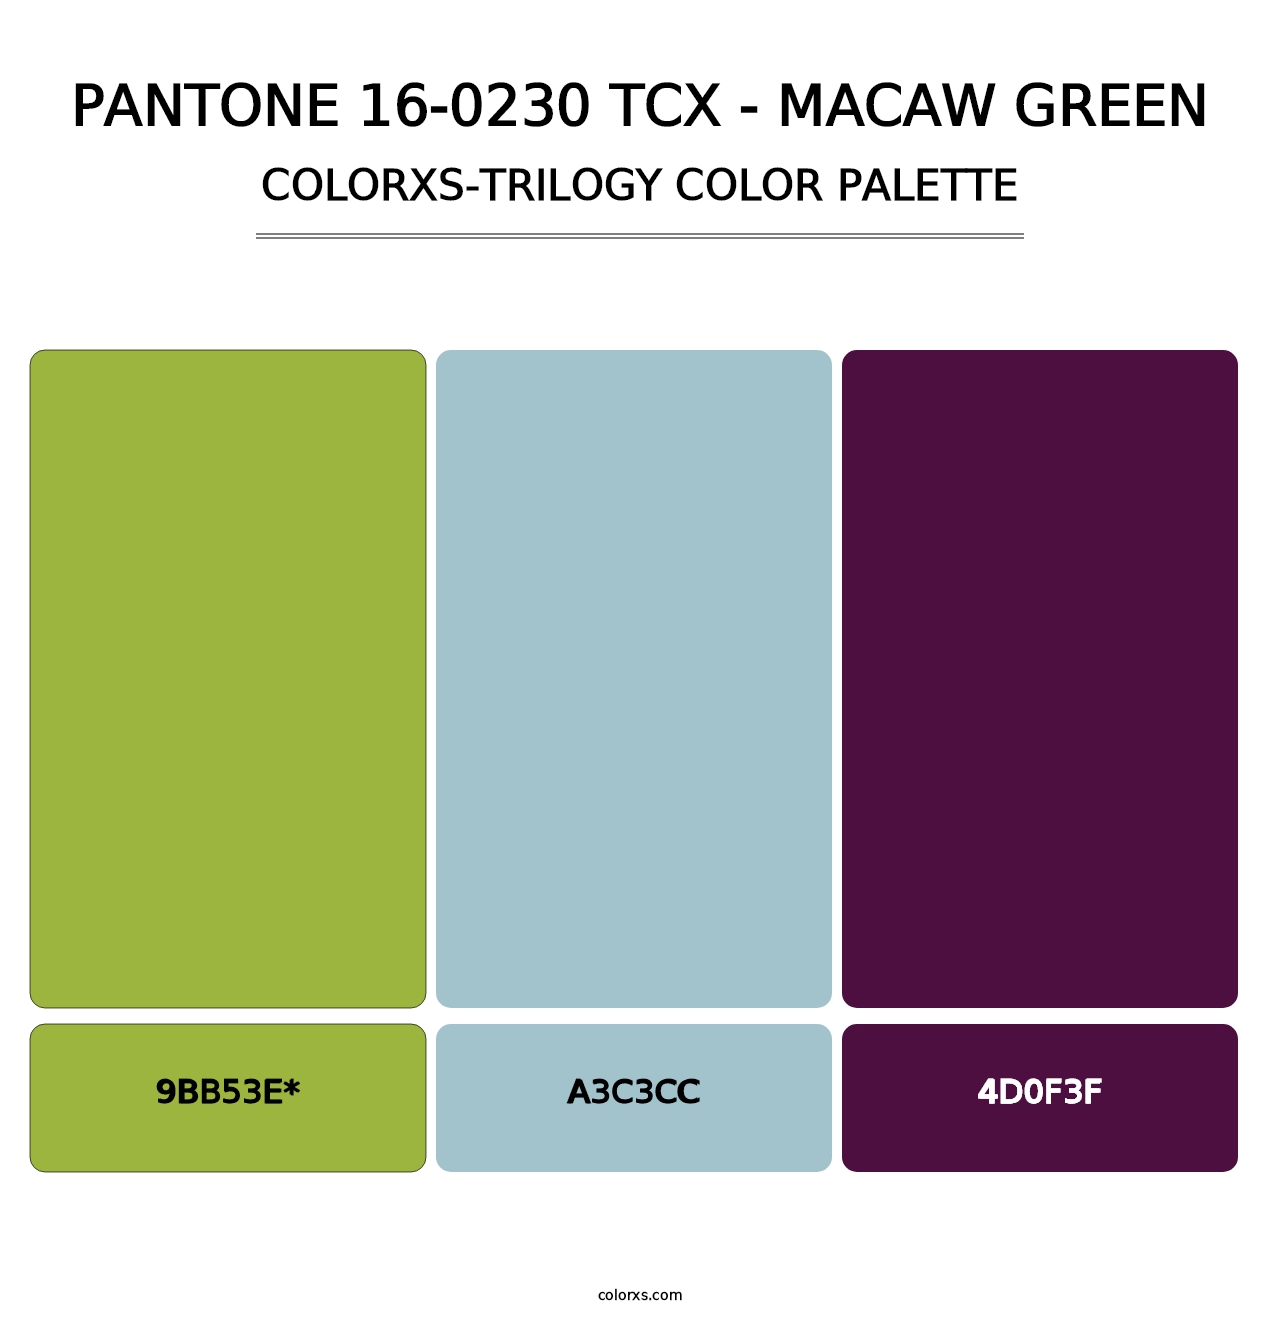 PANTONE 16-0230 TCX - Macaw Green - Colorxs Trilogy Palette